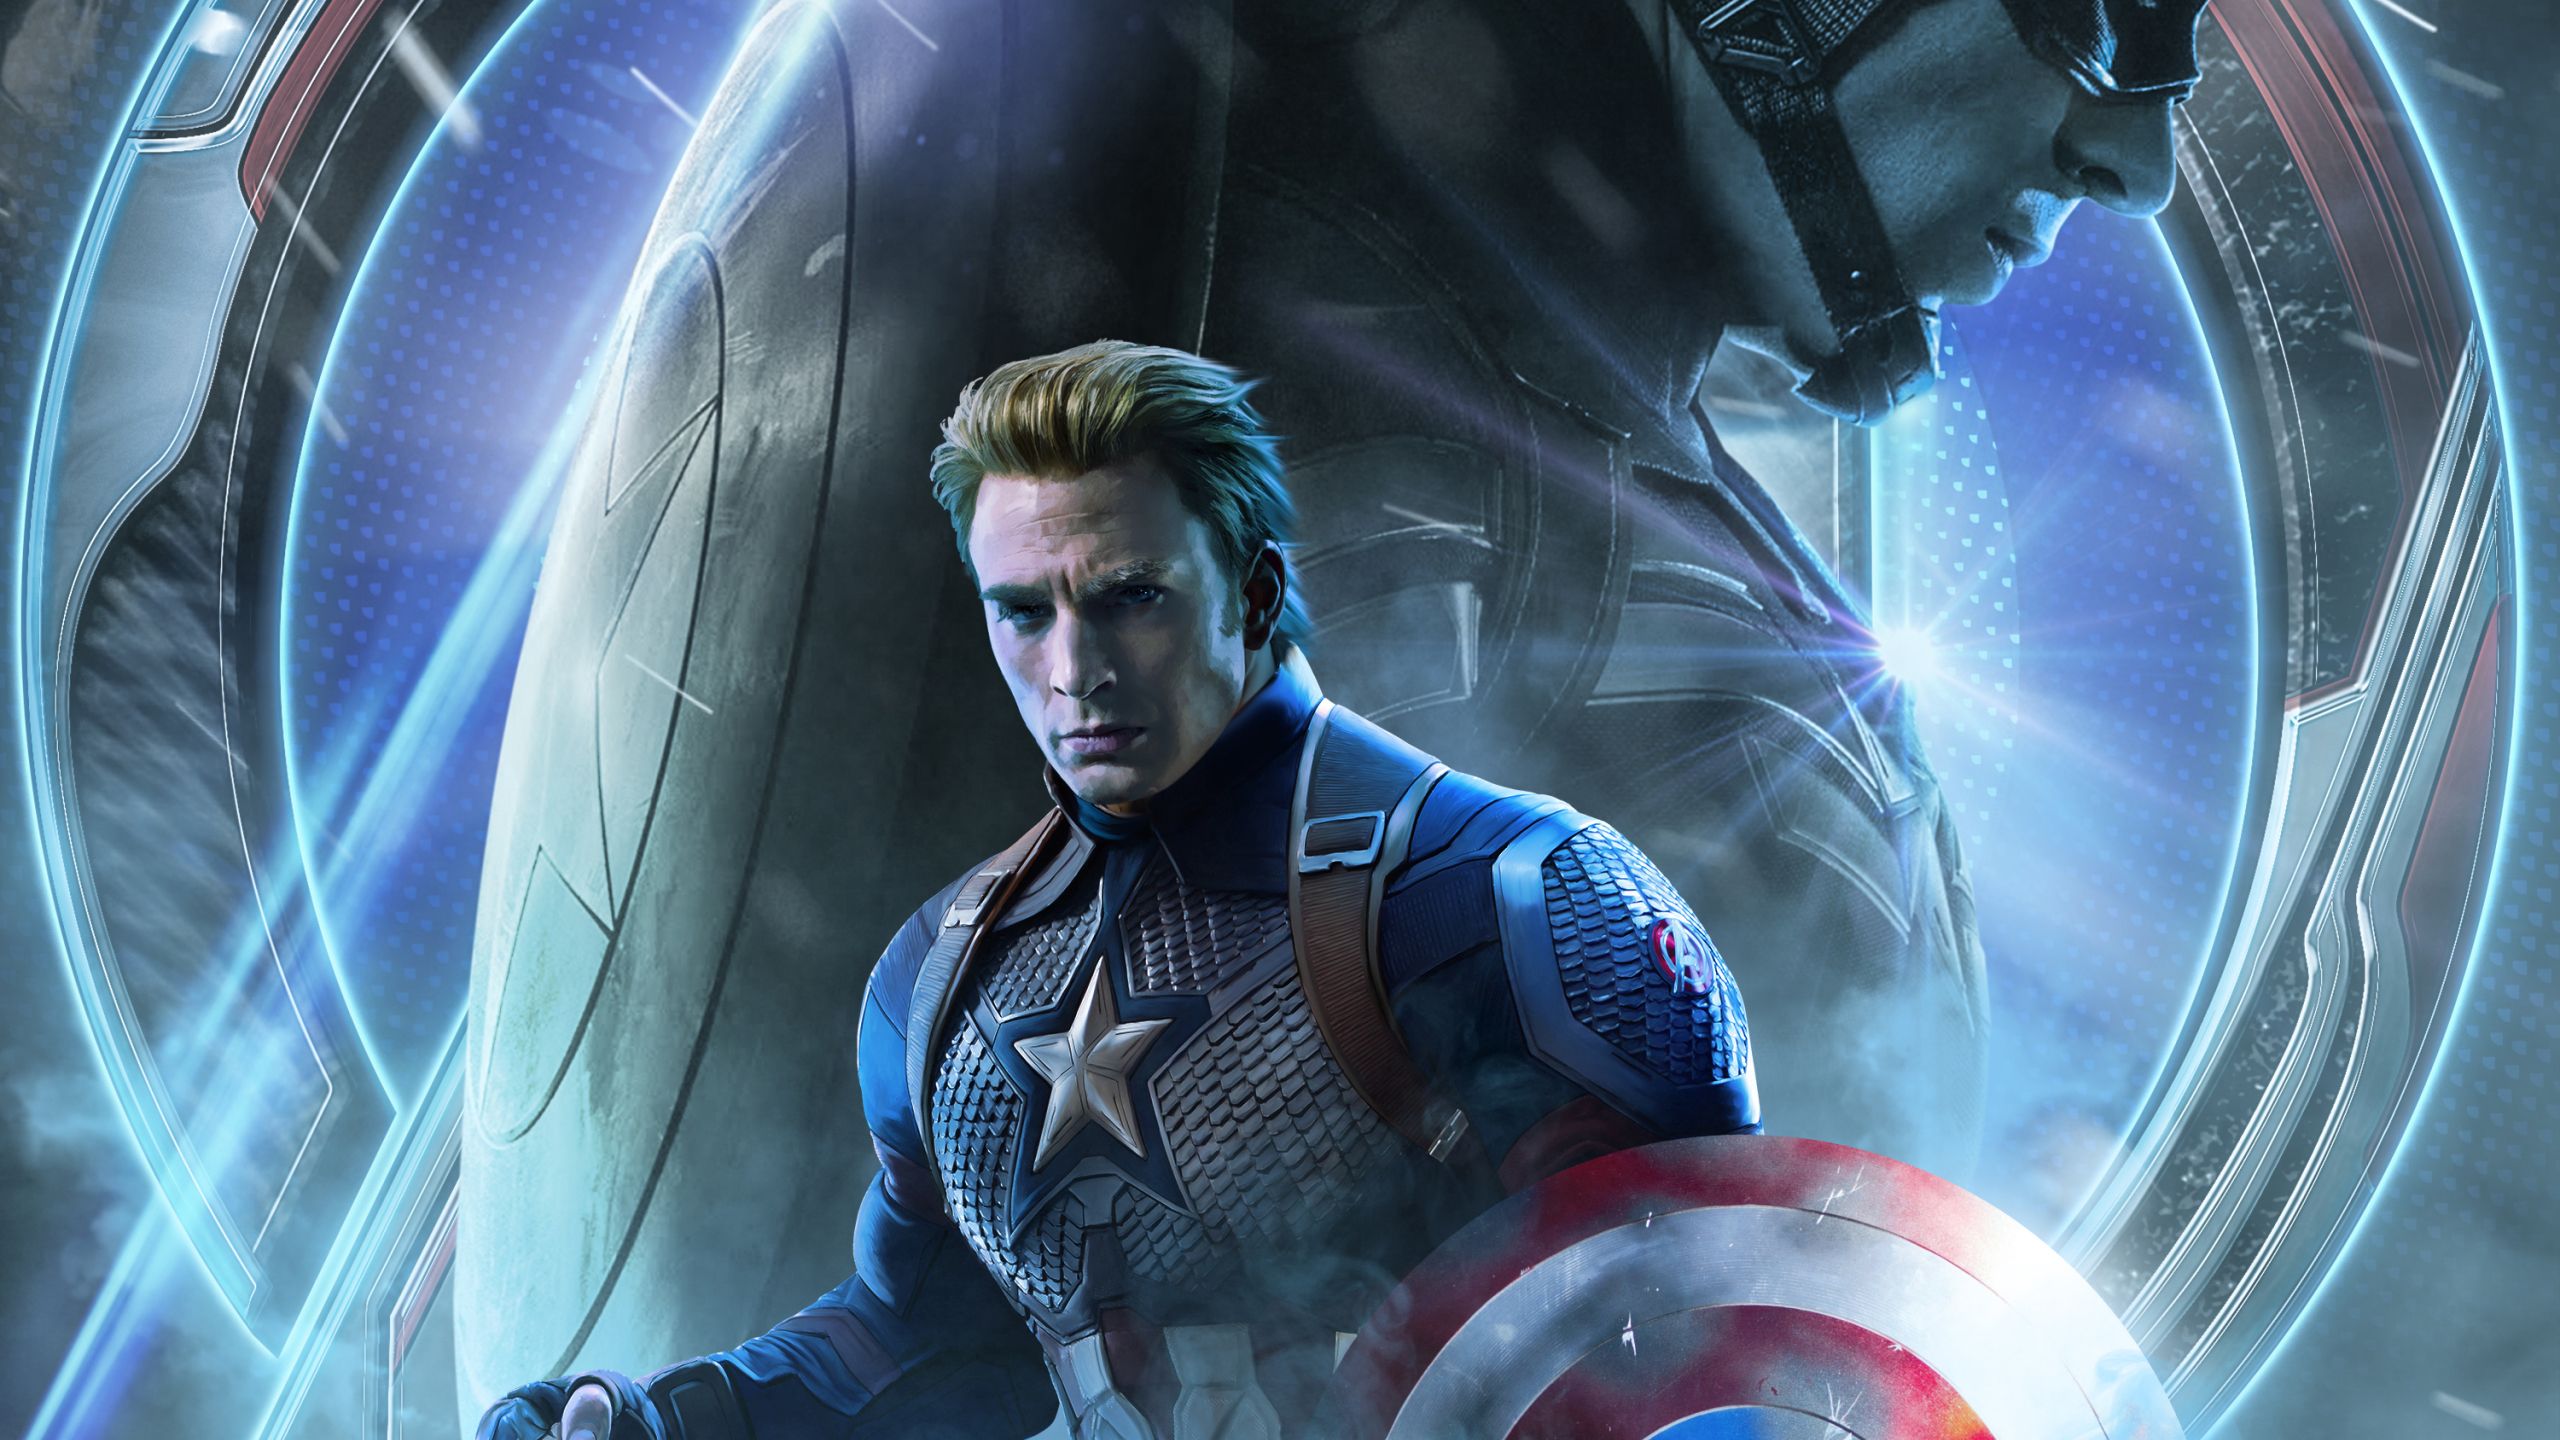 Avengers Endgame Captain America Poster Art 1440P